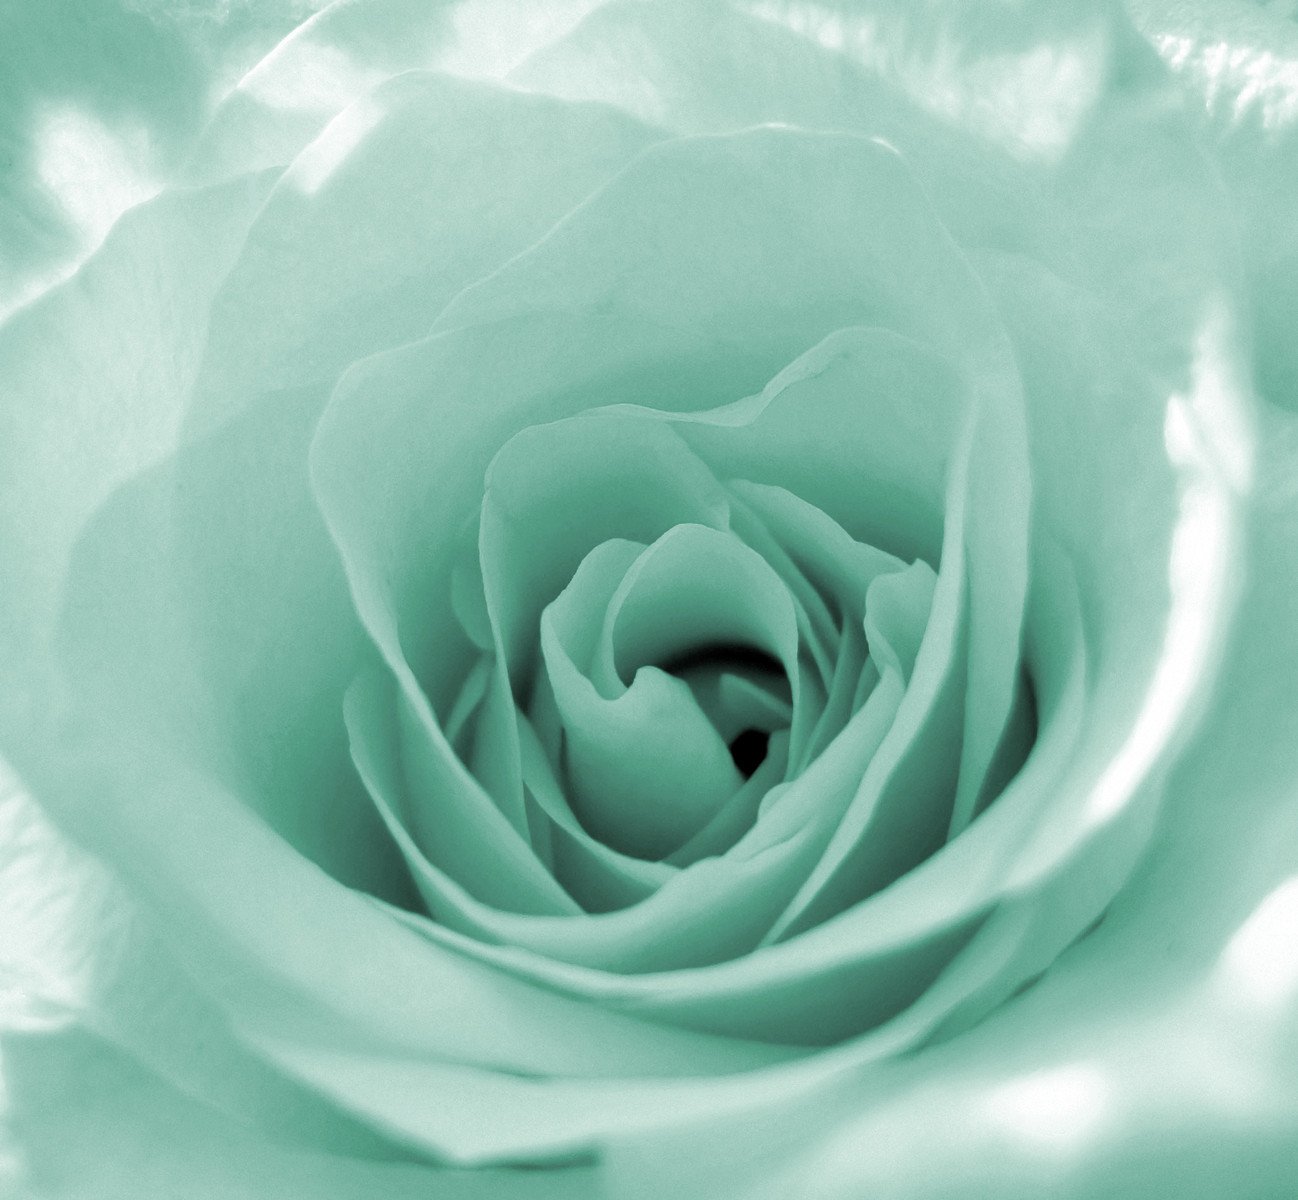 a light green rose in full bloom